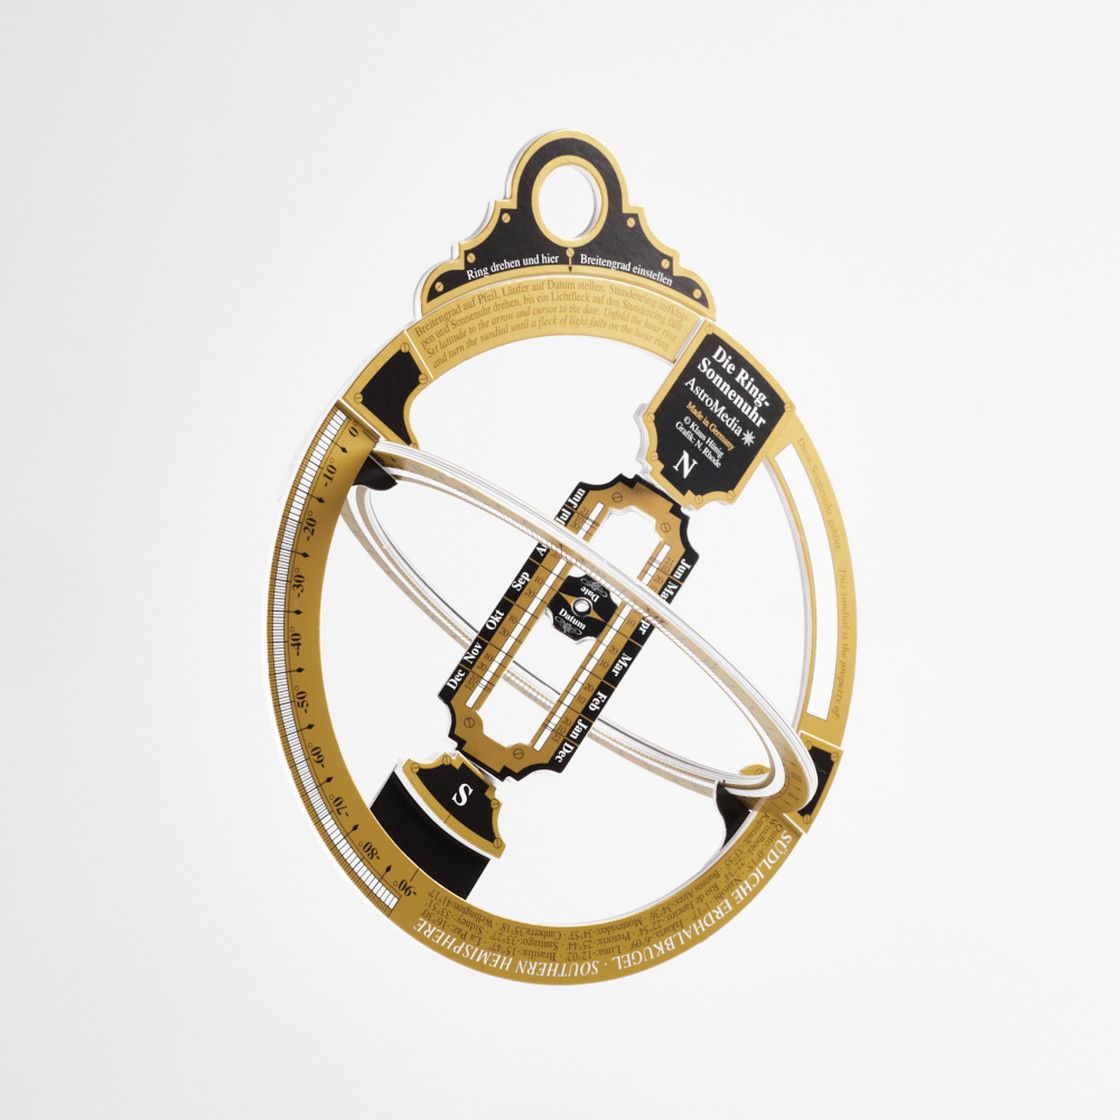 The ring sundial - AstroMedia